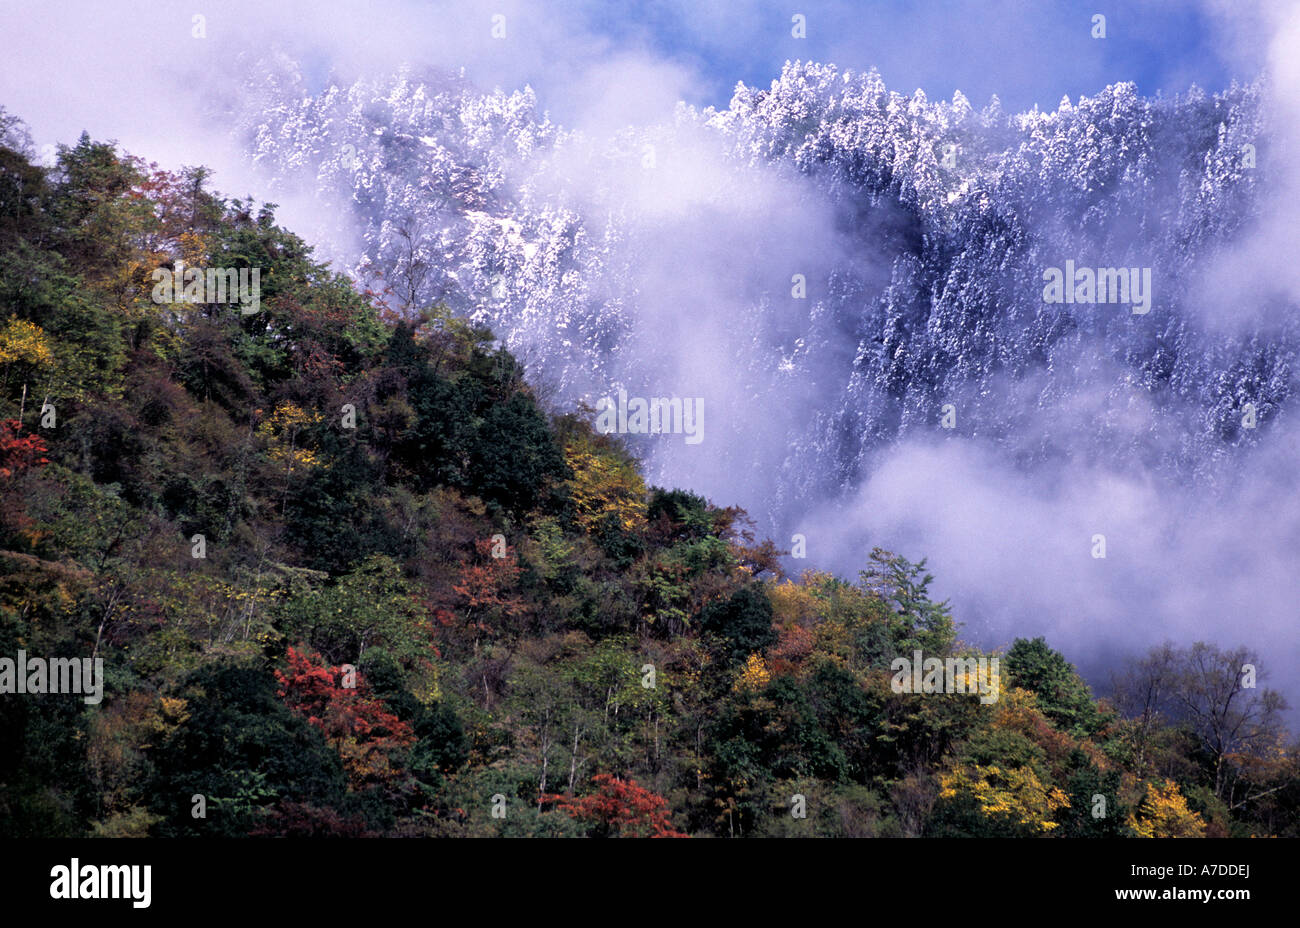 L'évolution des saisons de l'automne à l'hiver, la réserve naturelle de Wolong, Sichuan, Chine. Réserve naturelle de panda. Banque D'Images